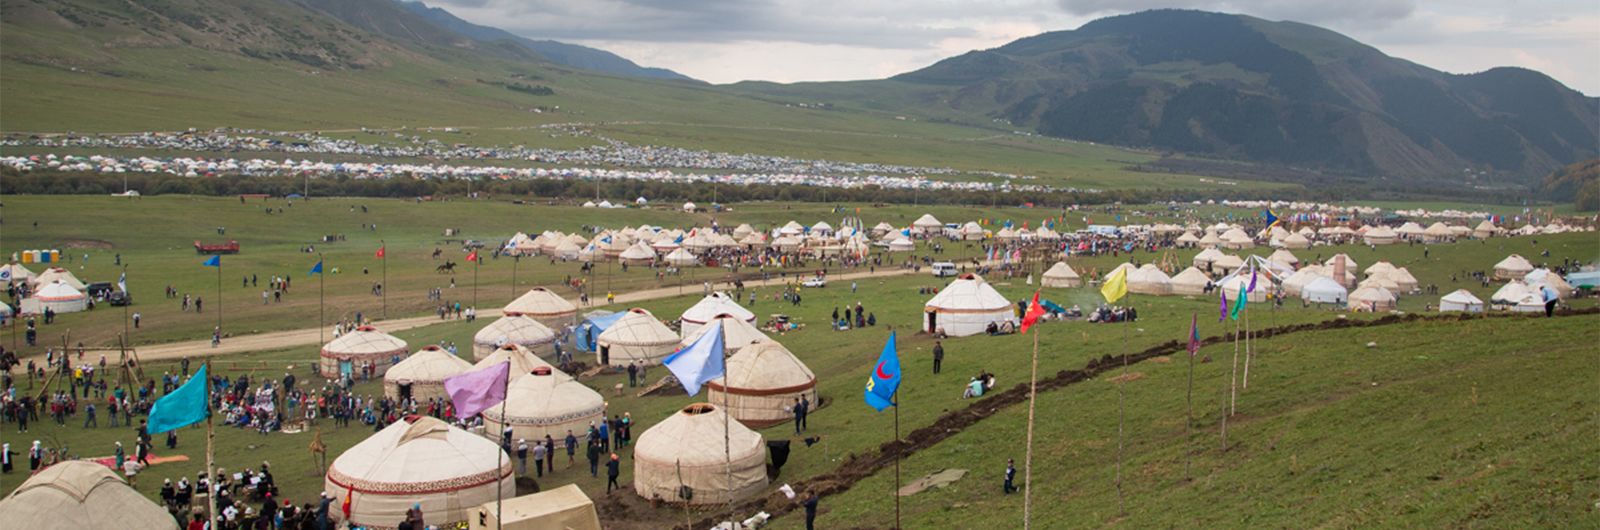 Campamento de yurtas Kirgyzstan